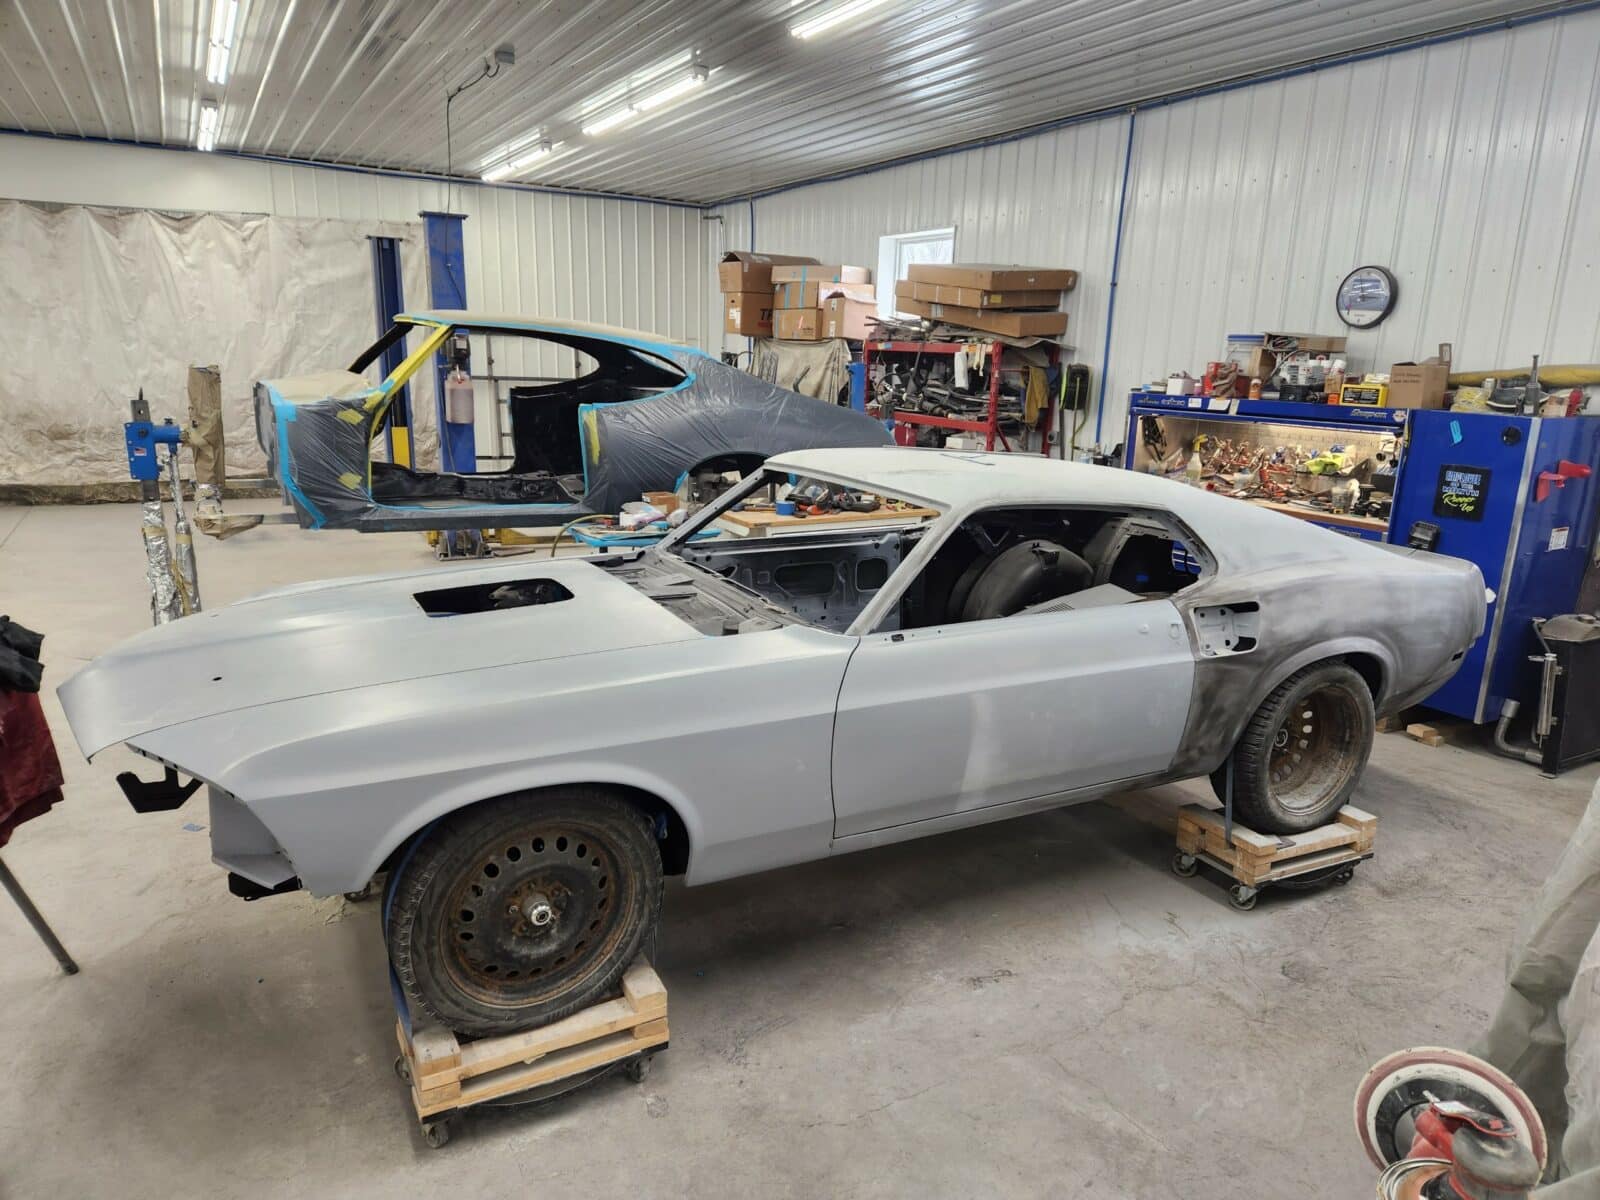 1969 Mustang restoration